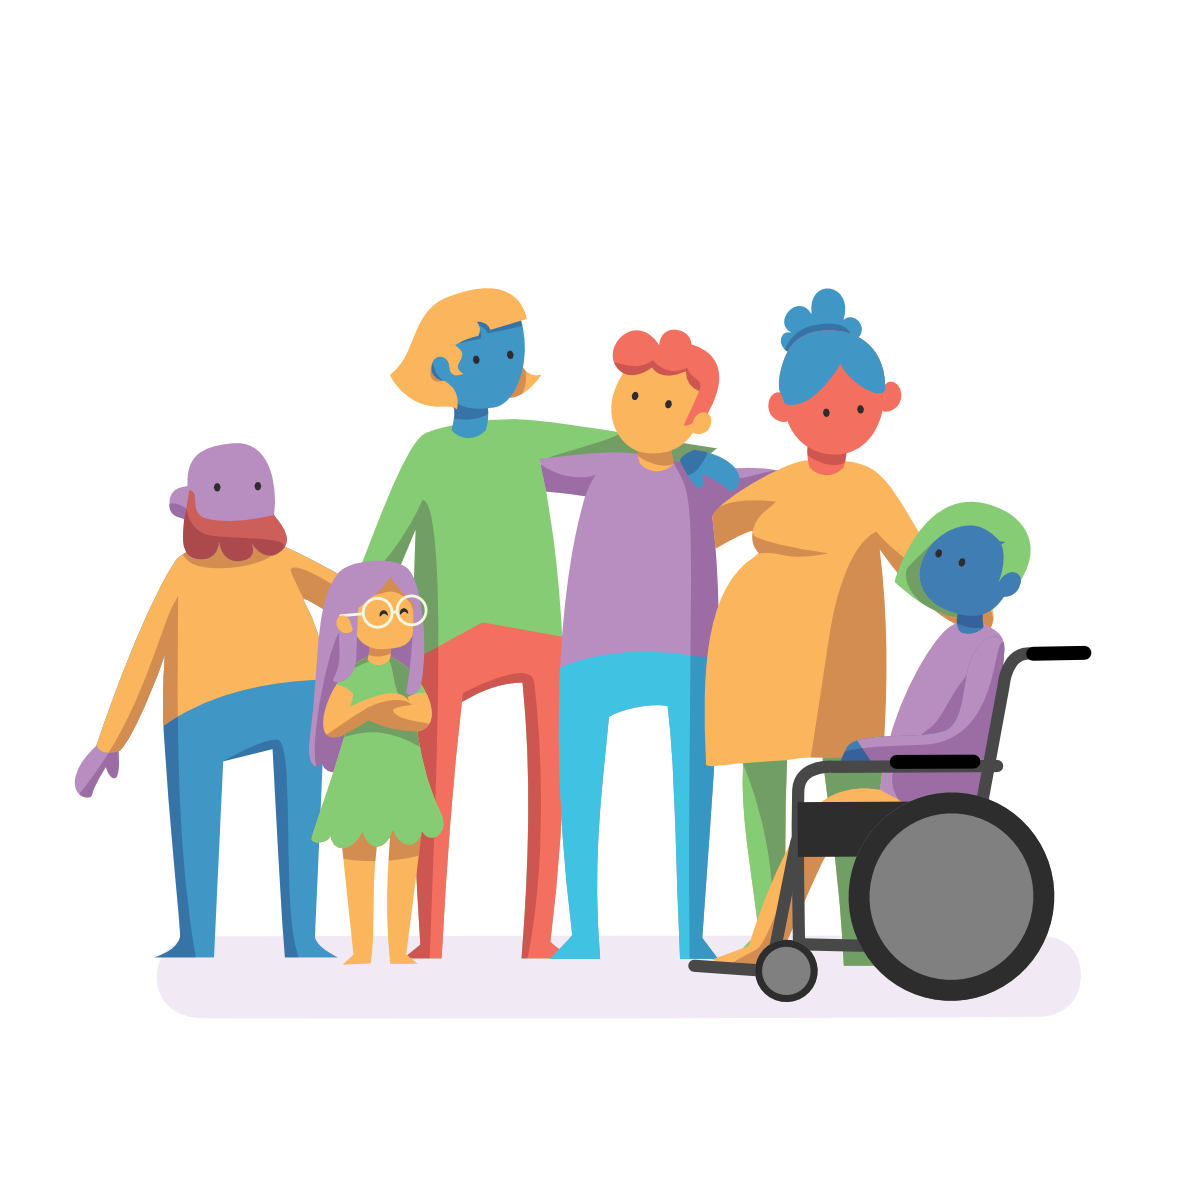 Imagen de un grupo de personas reunidas. Un hombre bajito con barba, una niña con gafas, una persona azul con pelo rubio, un hombre pelirrojo, una mujer embarazada y una mujer en una silla de ruedas.